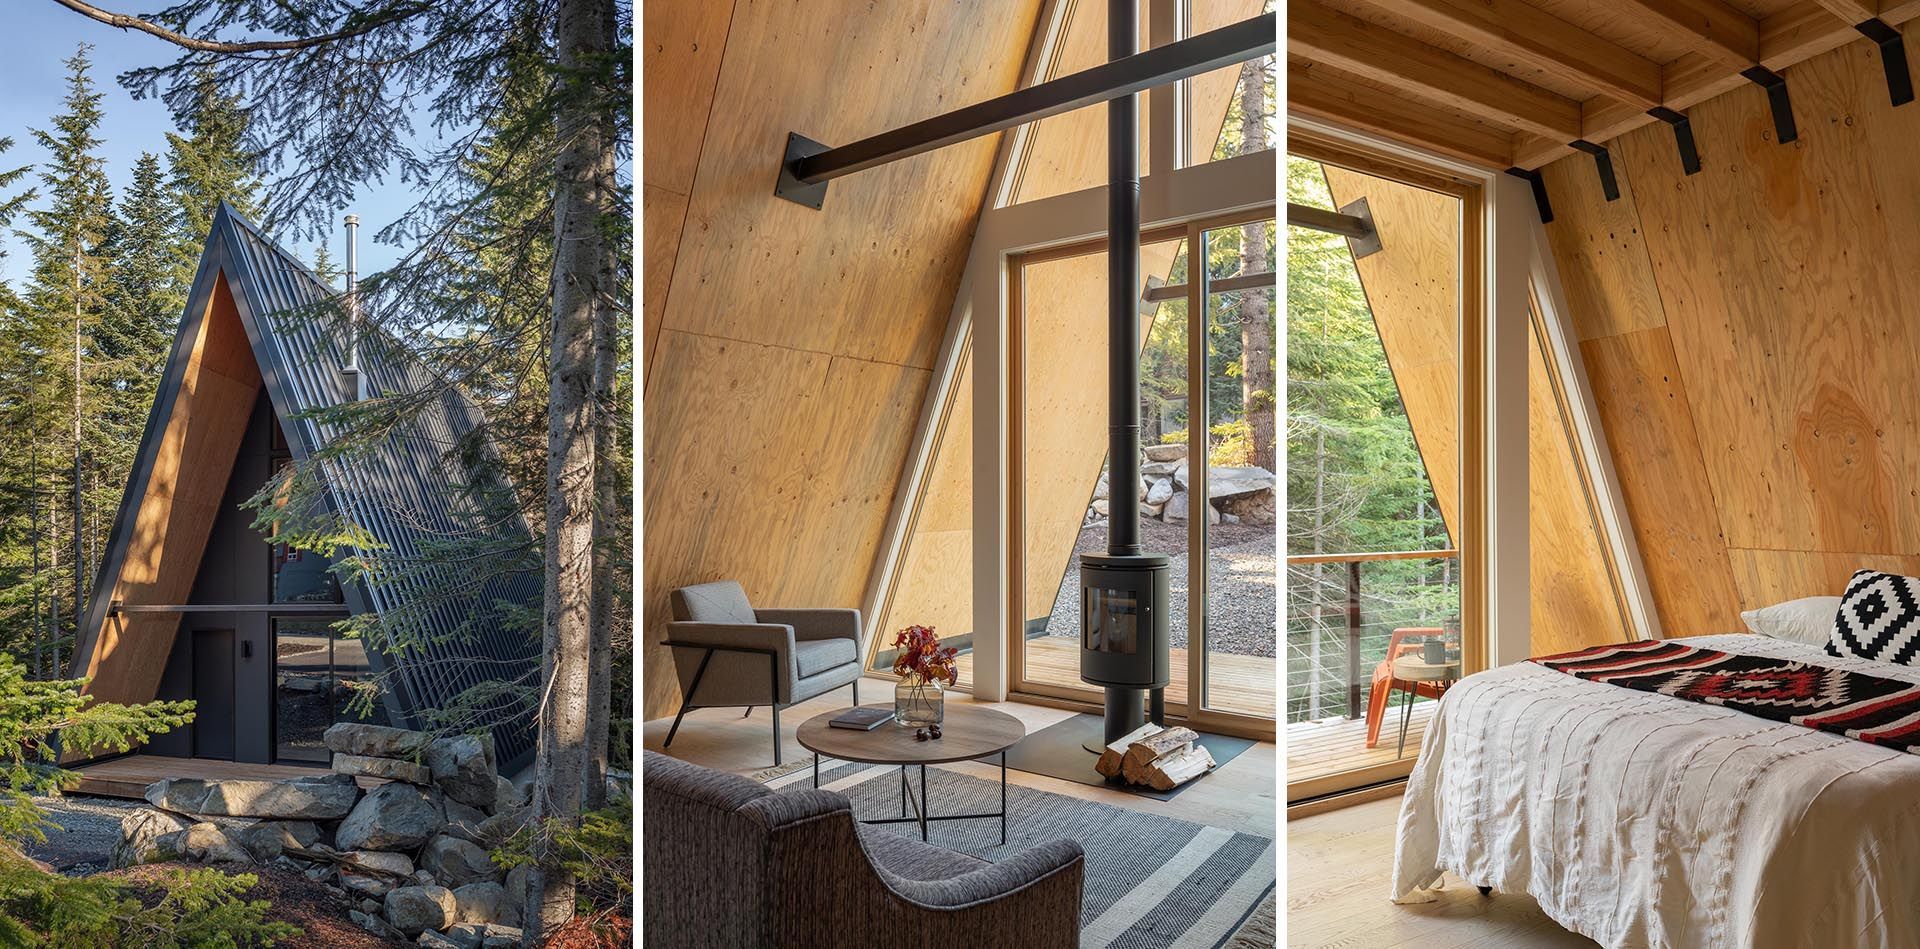 Нічого зайвого: простий дім у лісі, який огорне теплом та затишком - Дизайн 24